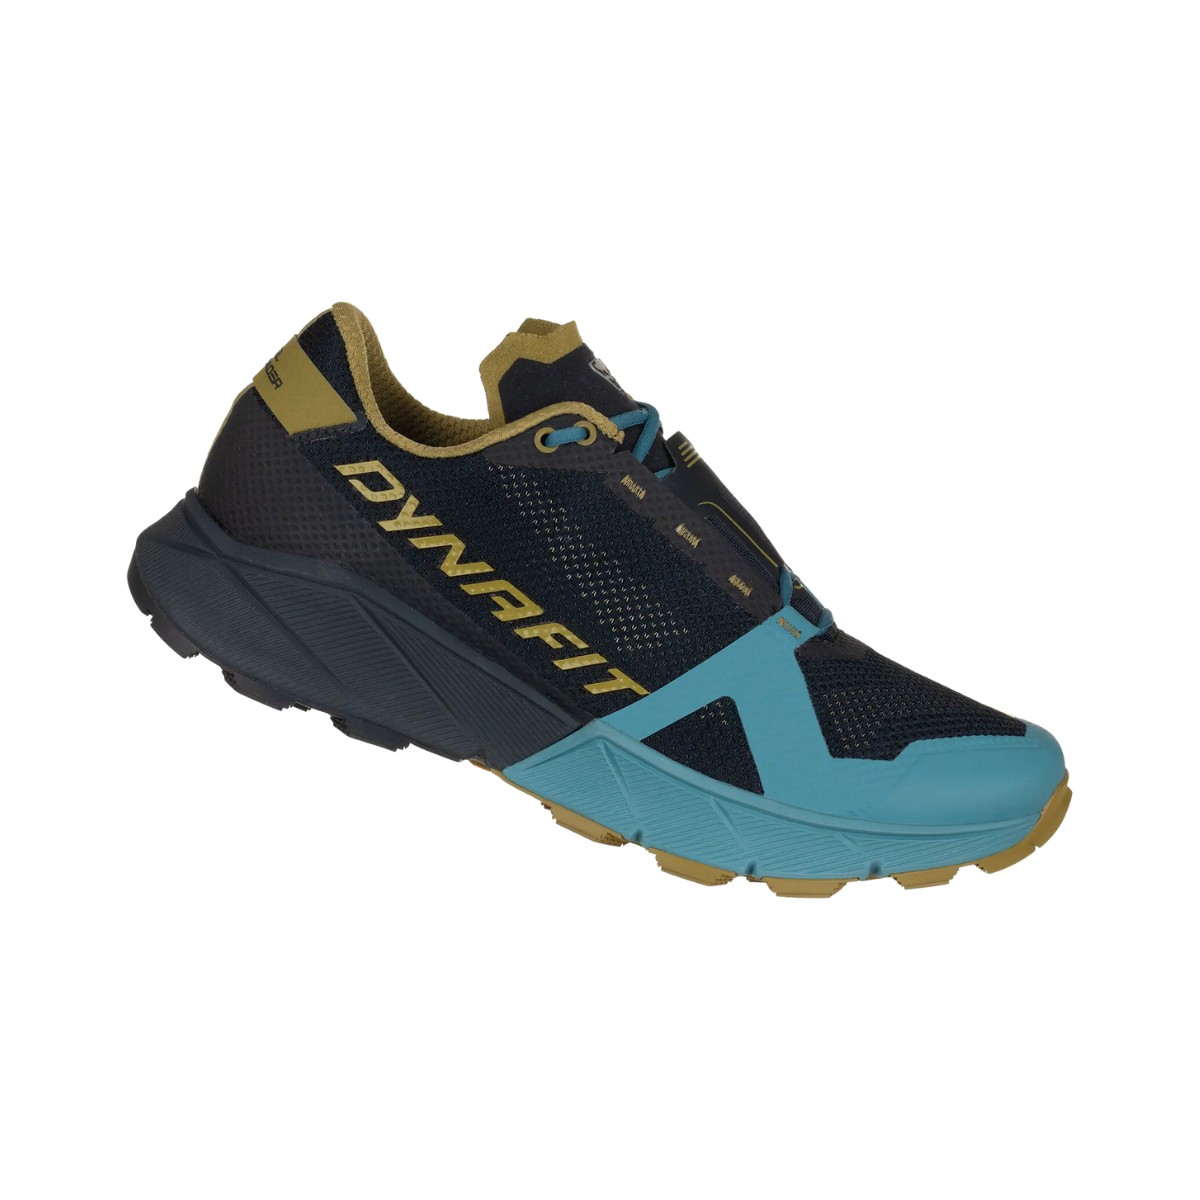 Schuhe Dynafit Ultra 100 Marineblaue und Hellblaue, Größe 42,5 - EUR